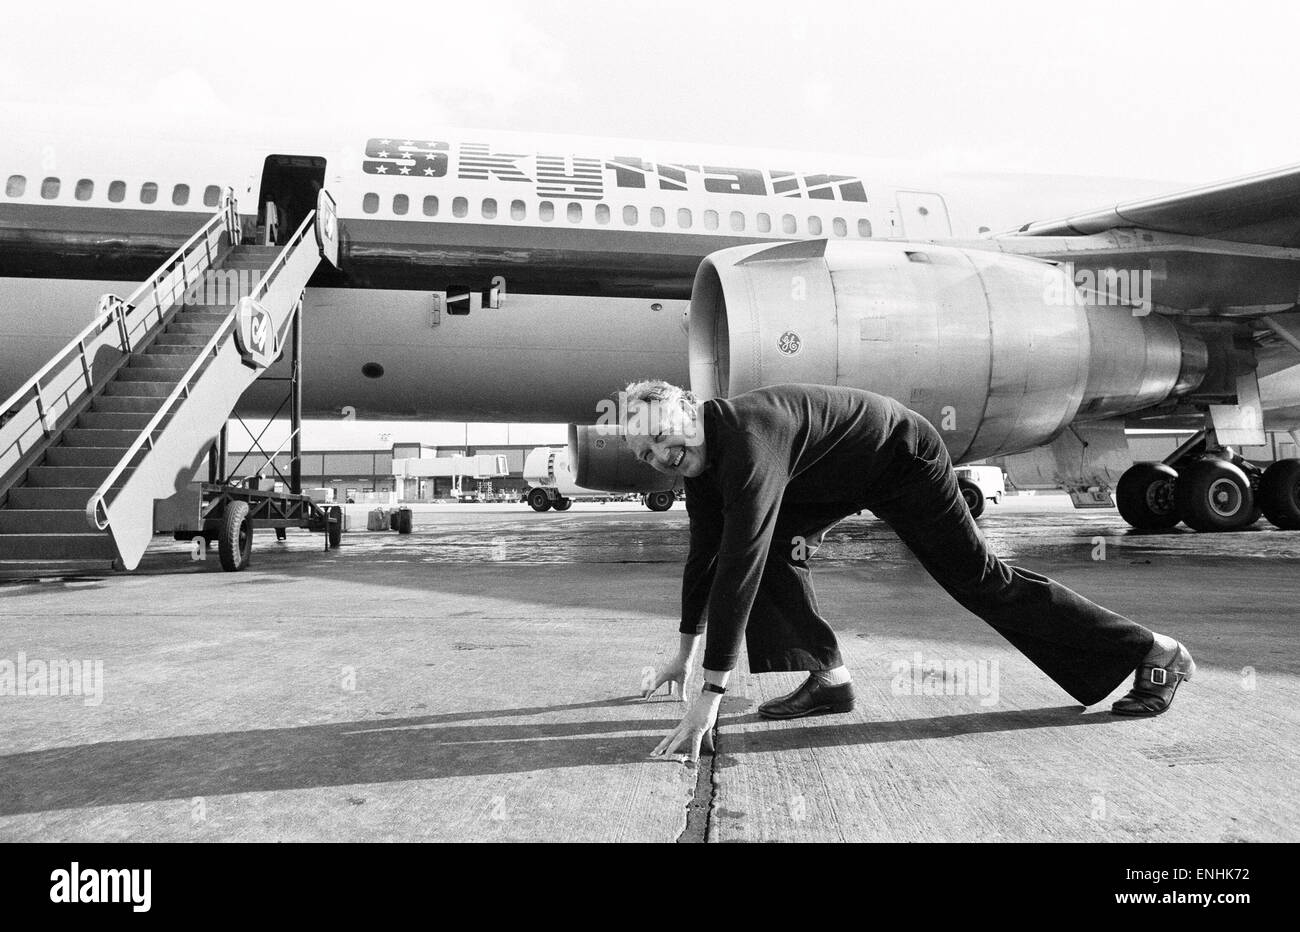 Head of Laker Airways Freddie Laker in jubilant mood on the runway at ...